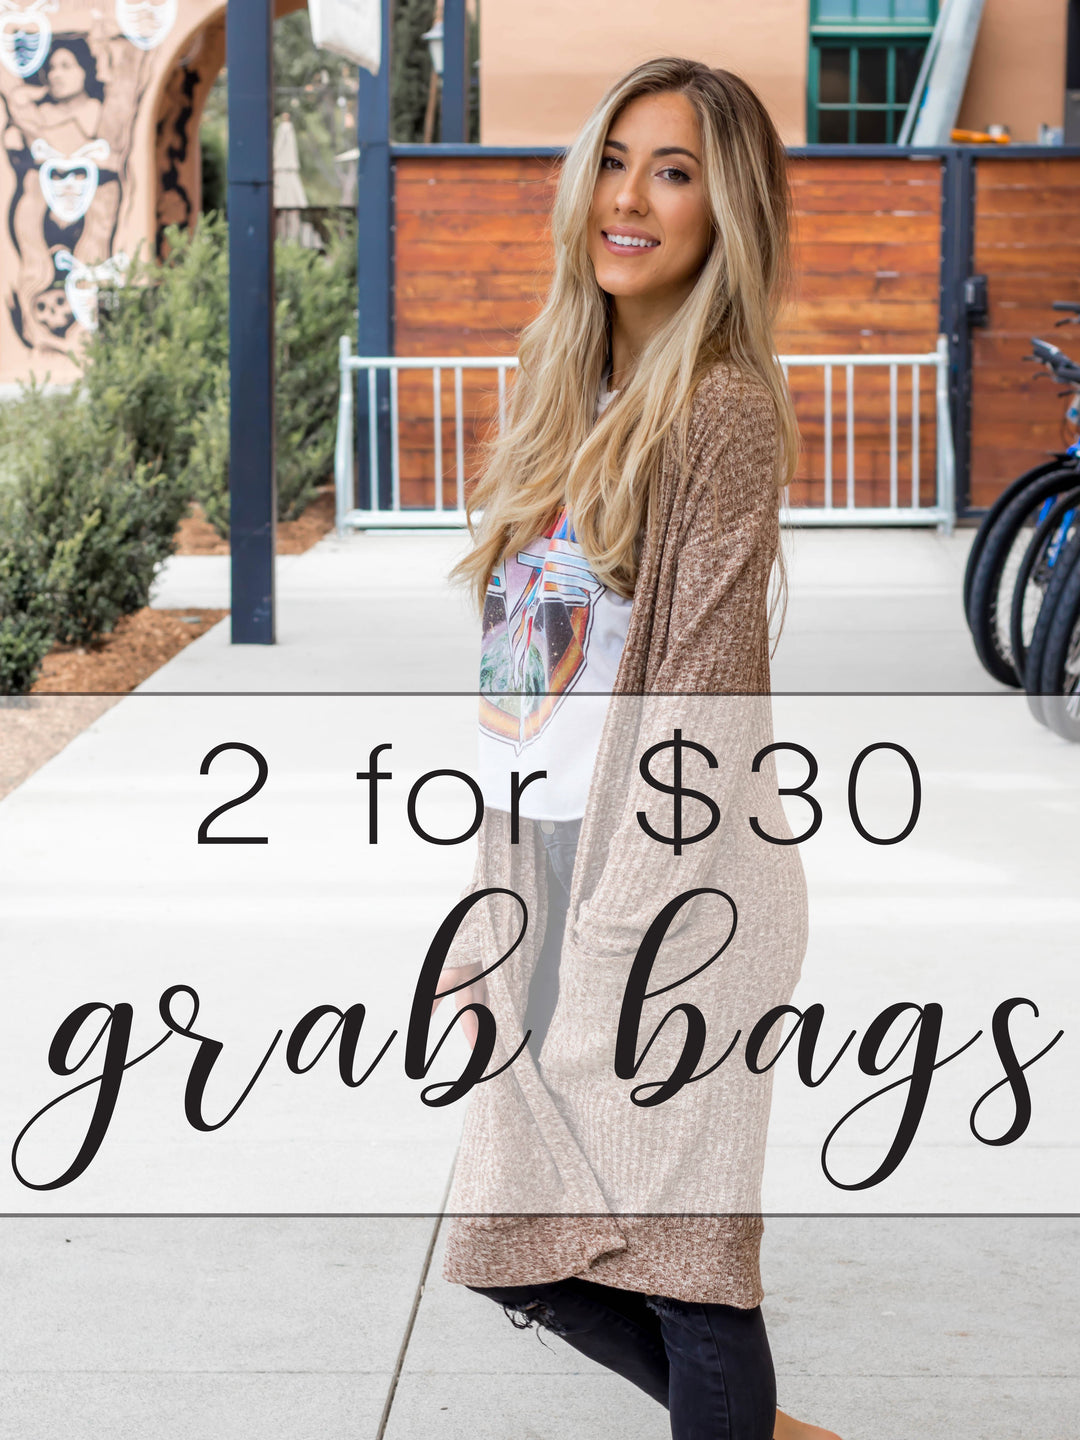 Grab Bags - 2 for $30 - Cardigan/Top